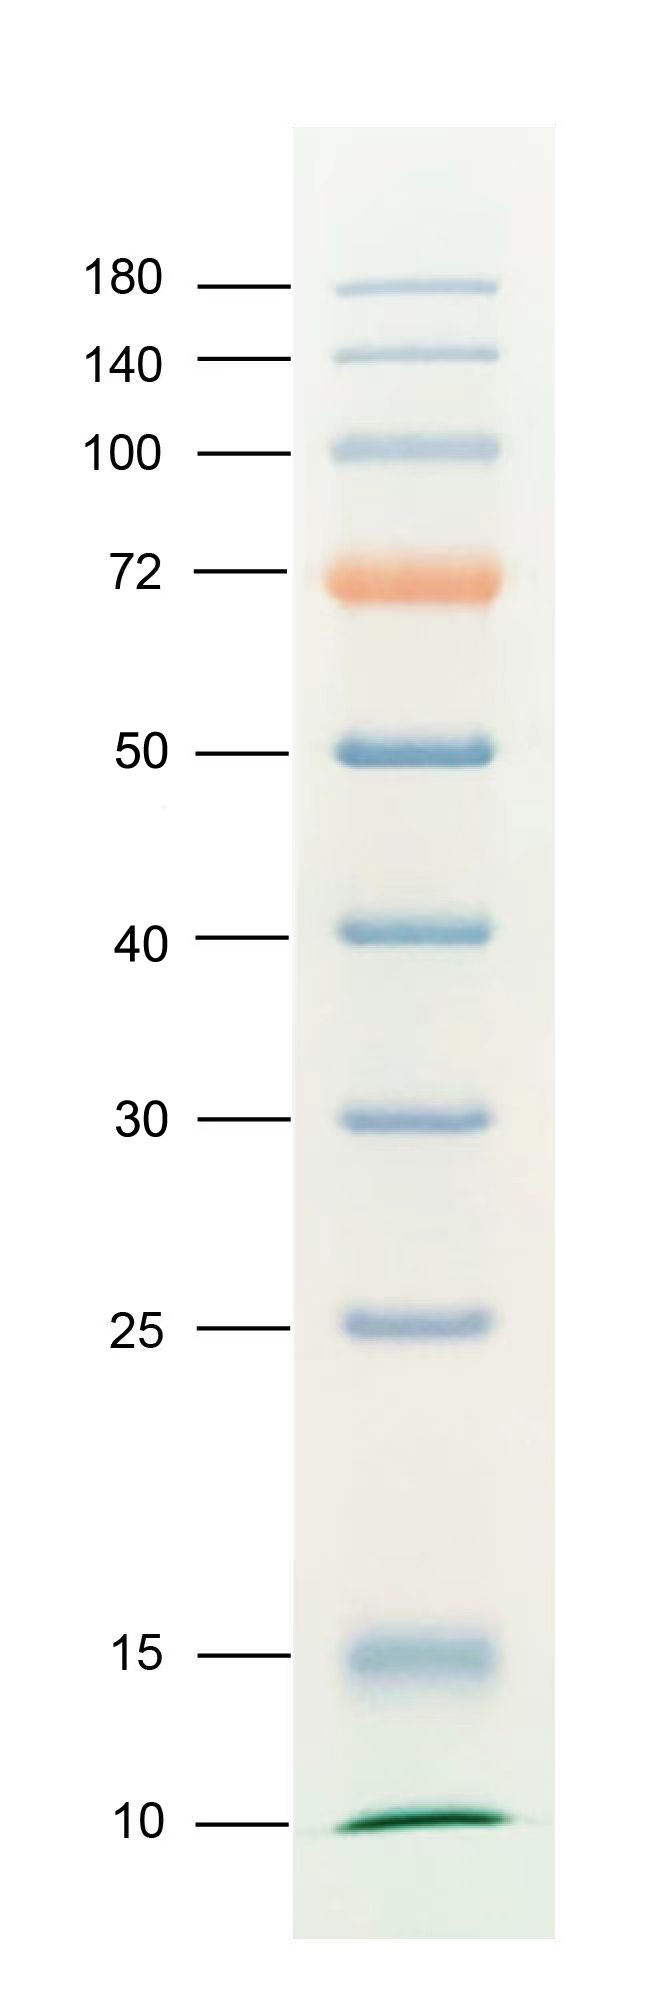 增强型彩虹广谱蛋白Marker(10-180KD)